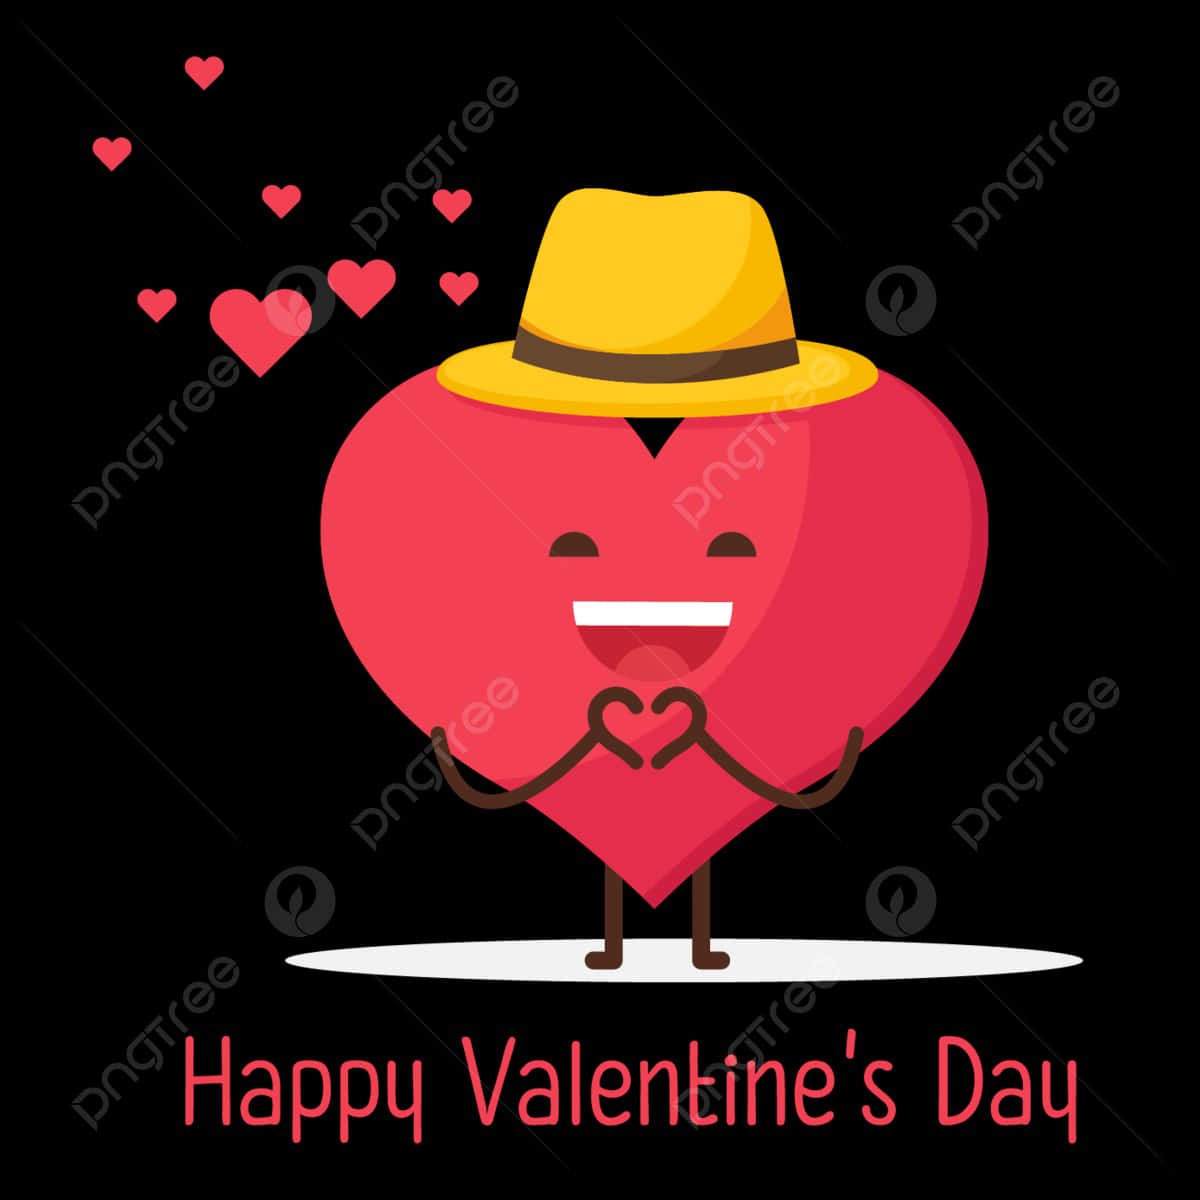 Felizdía De San Valentín - Corazón De Dibujos Animados Con Sombrero Y Corazón Fondo de pantalla